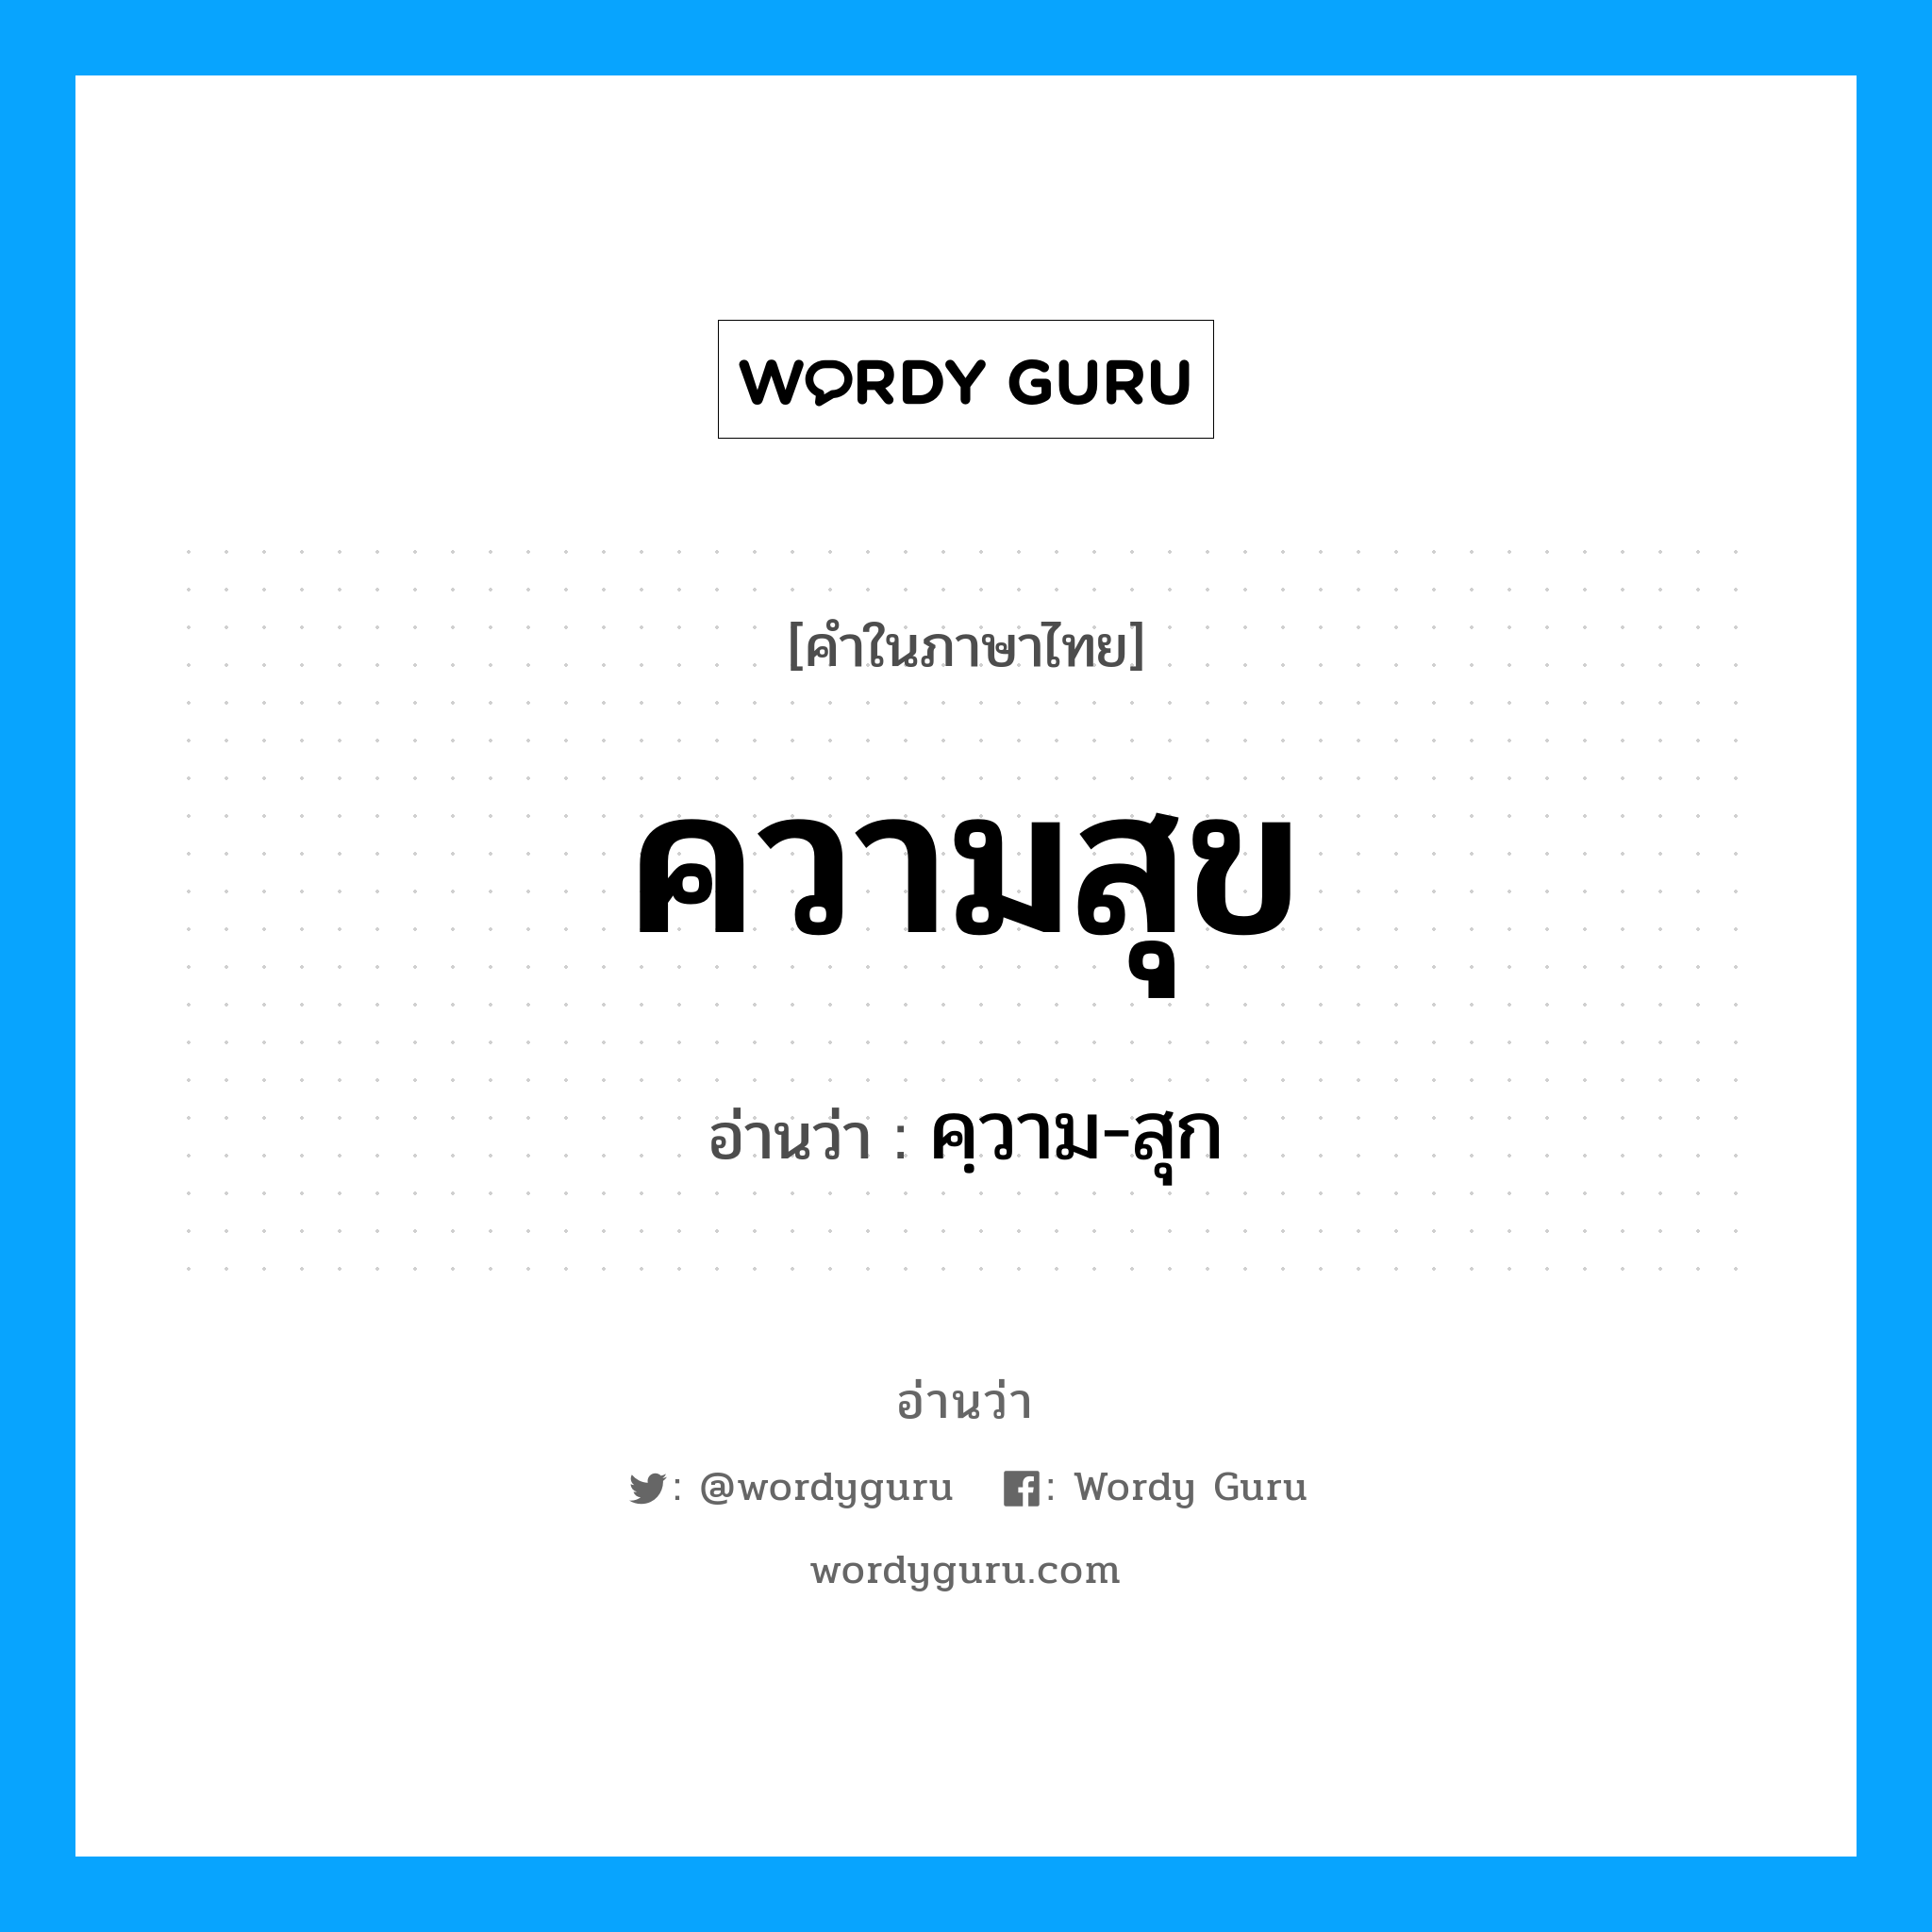 คฺวาม-สุก เป็นคำอ่านของคำไหน?, คำในภาษาไทย คฺวาม-สุก อ่านว่า ความสุข